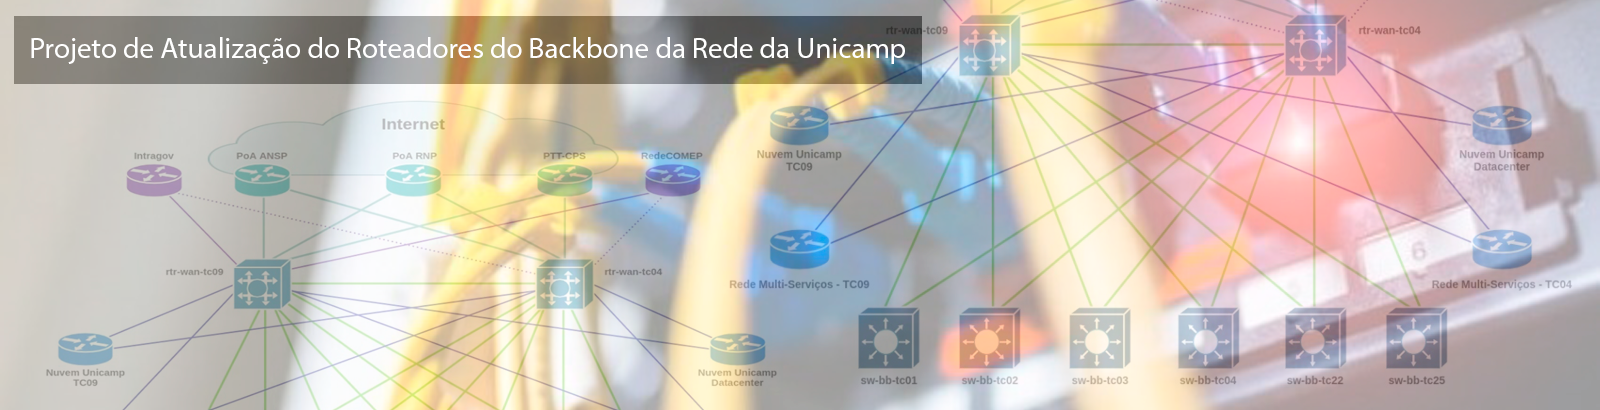 Projeto de Atualização do Roteadores do Backbone da Rede da Unicamp